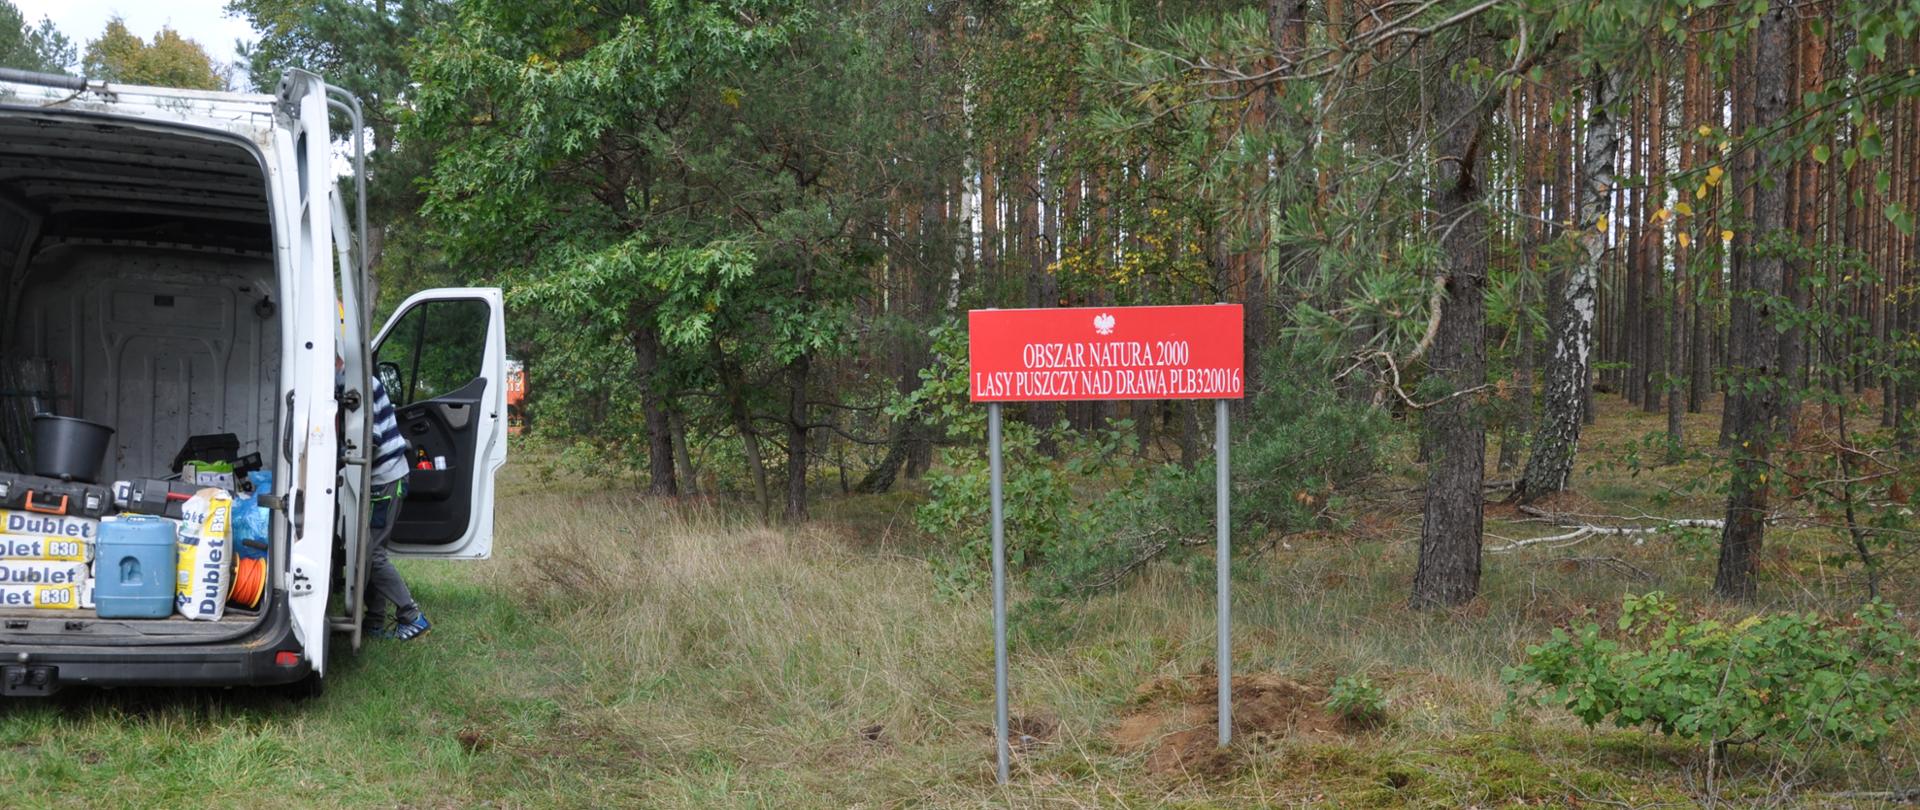 Po lewej stronie fragment białego samochodu z otwartym bagażnikiem. Po prawej stronie czerwona tablica z napisem Obszar Natura 2000 Lasy Puszczy nad Drawą. W tle fragment lasu.